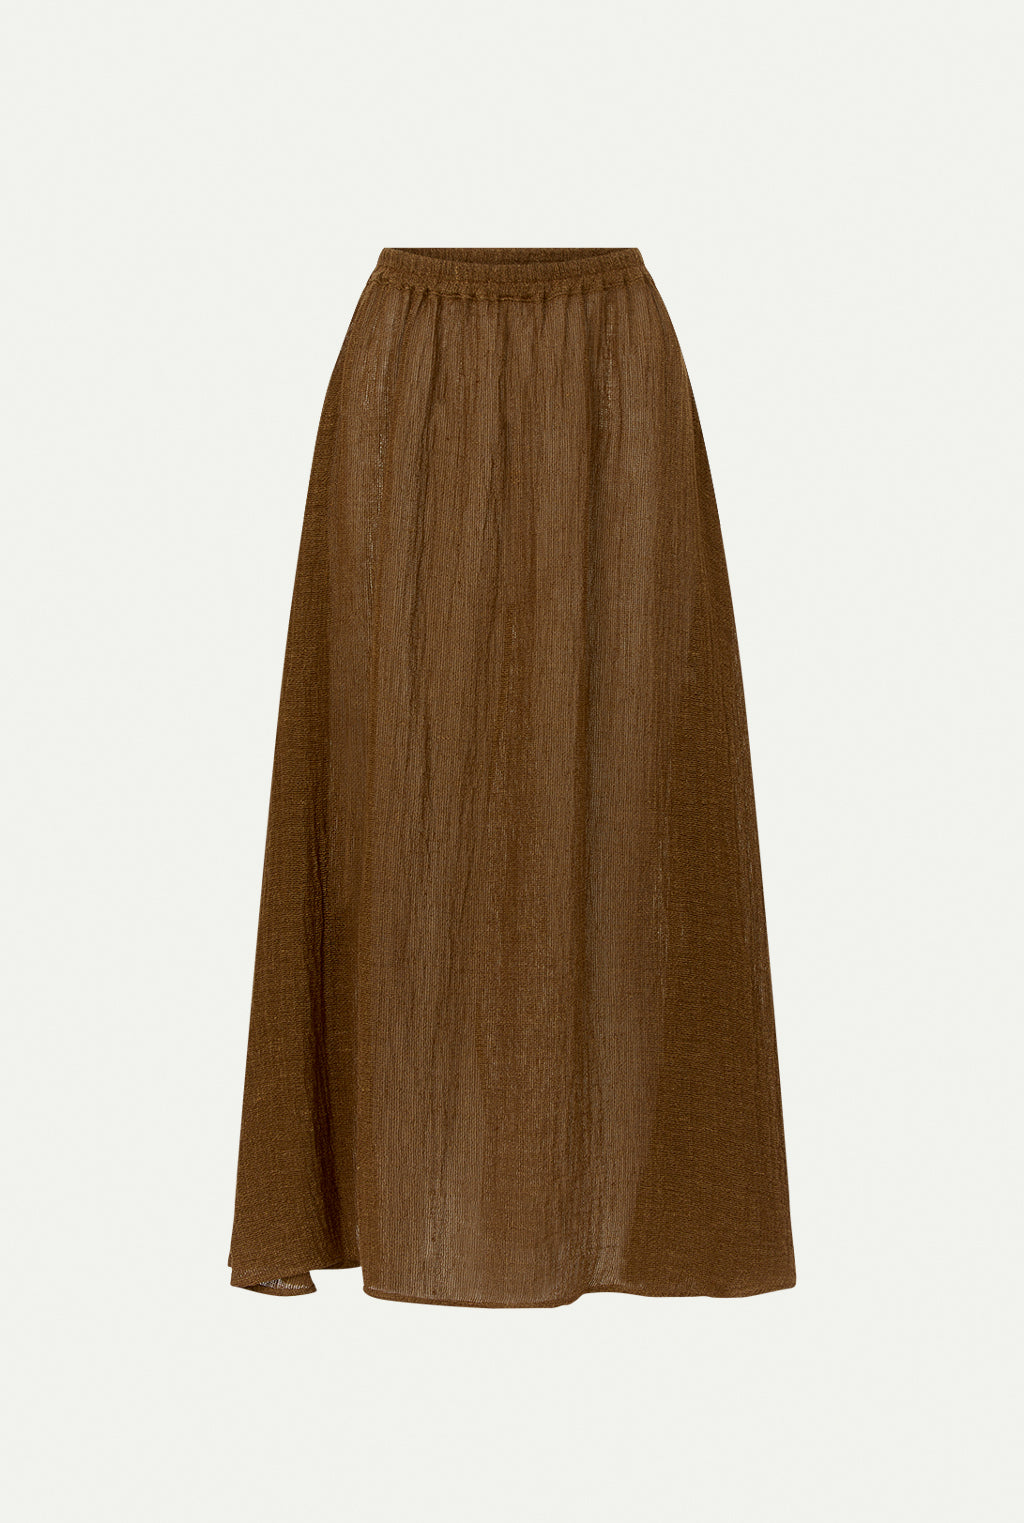 SANAFIG linen skirt